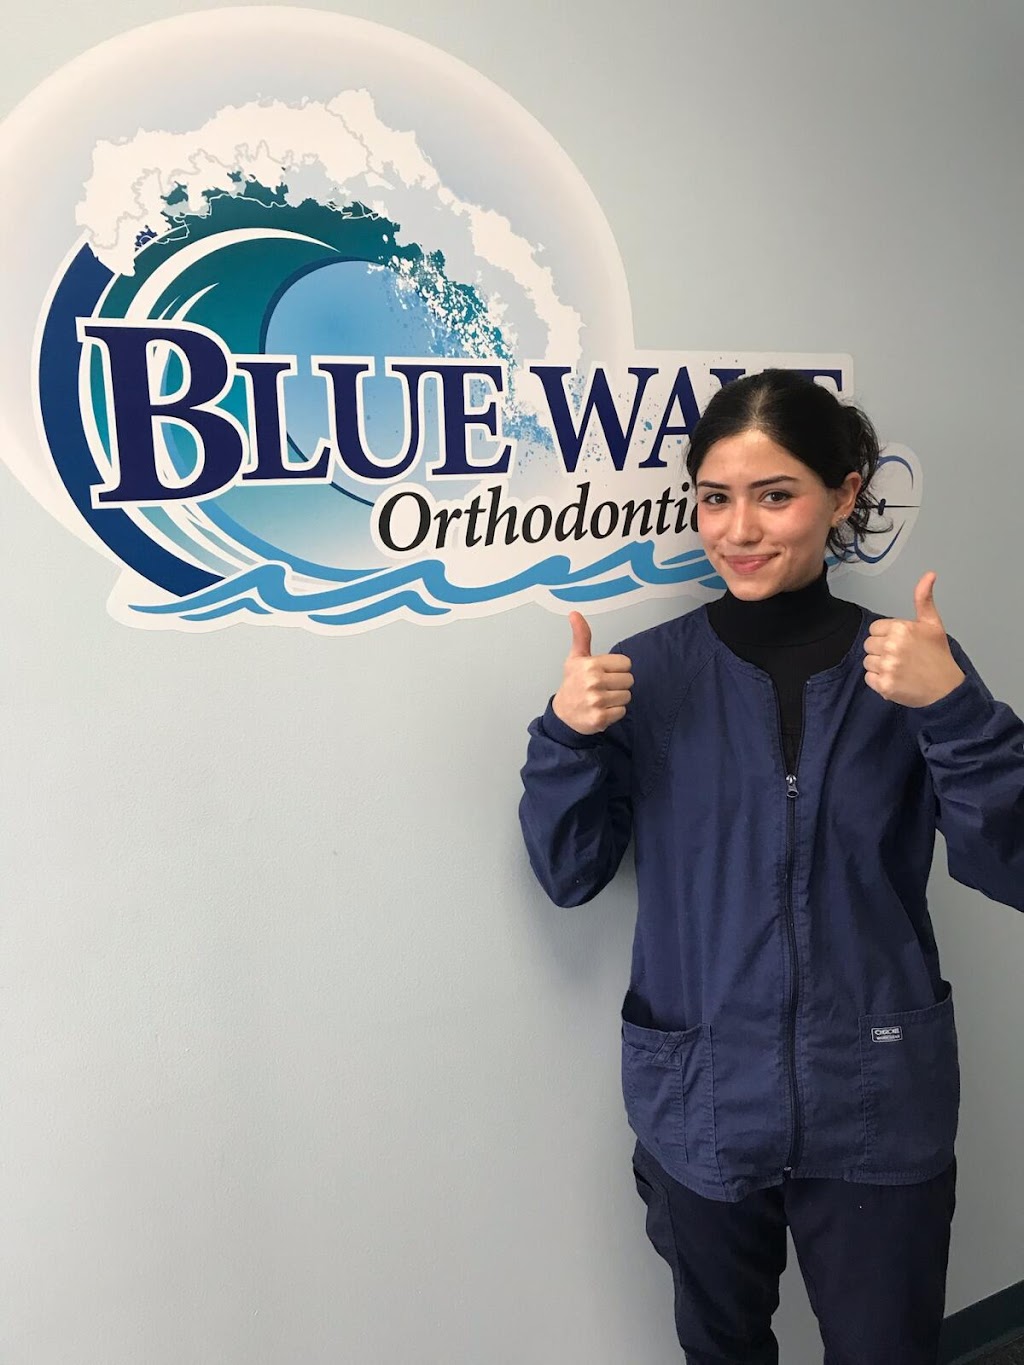 Blue Wave Orthodontics | 262 Purchase St, Rye, NY 10580 | Phone: (914) 967-2277